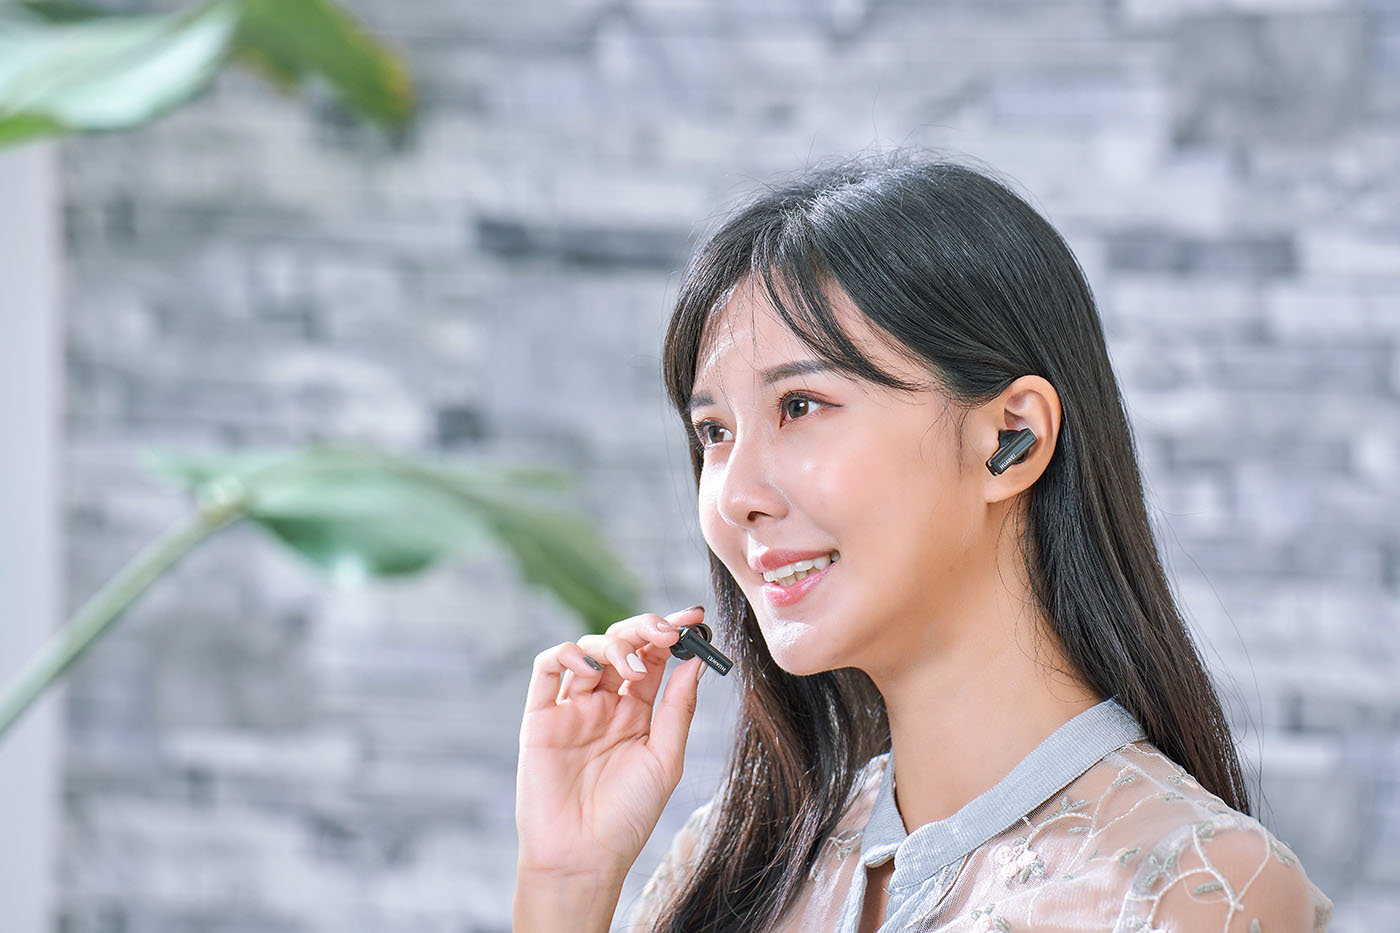 前面提到FreeBuds Pro 內建骨聲紋通話降噪功能，可以大幅提升通話時的音訊傳送清晰度，其實這款耳機還支援將單側耳機取下，作為獨立通話麥克風使用，讓通話效果更好。